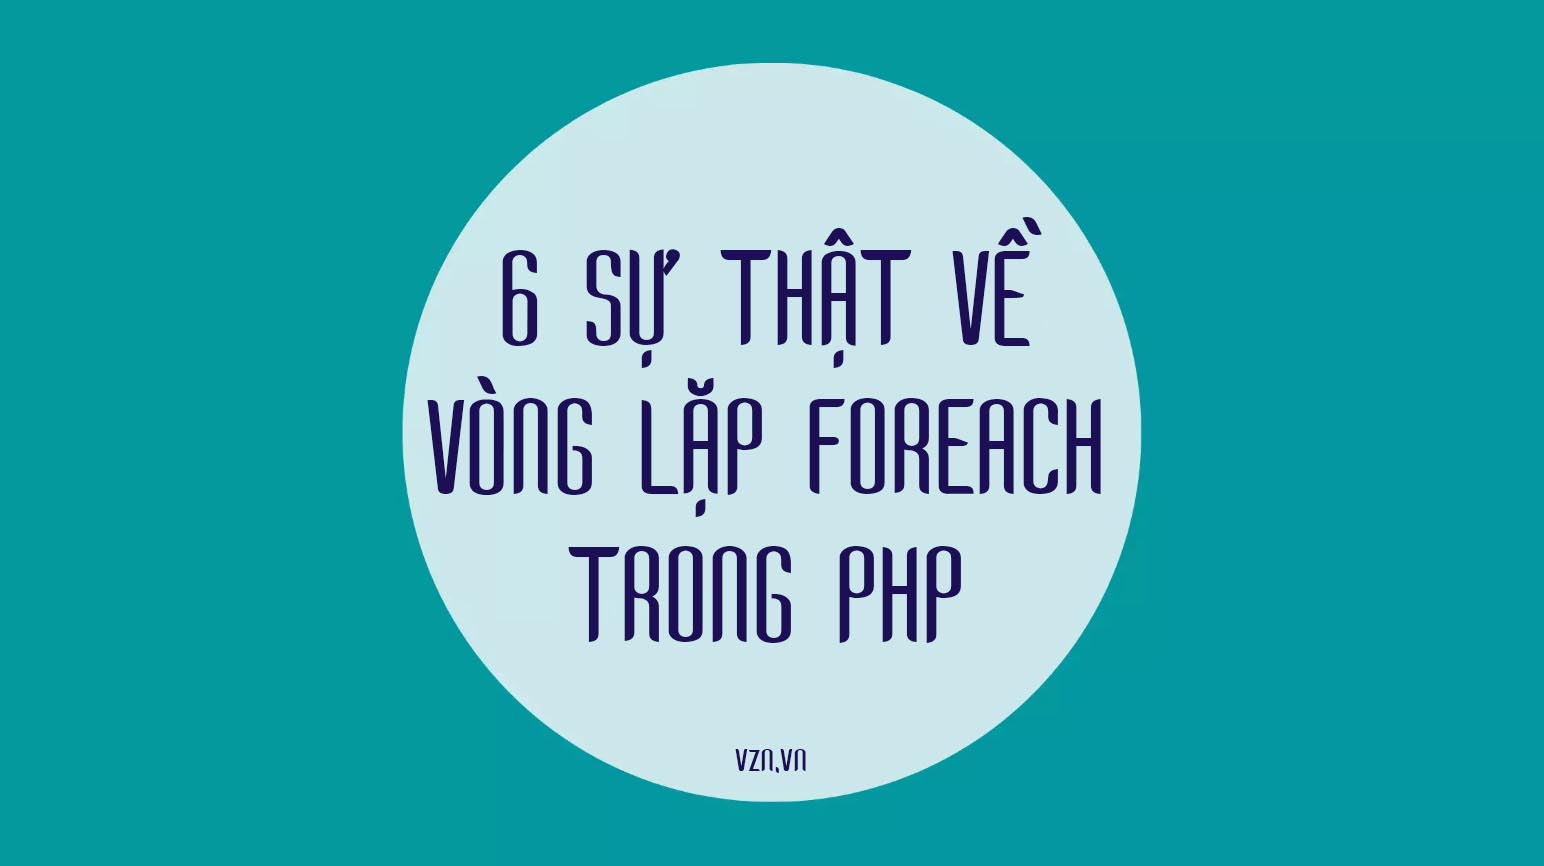 6 SỰ THẬT VỀ VÒNG LẶP FOREACH TRONG PHP